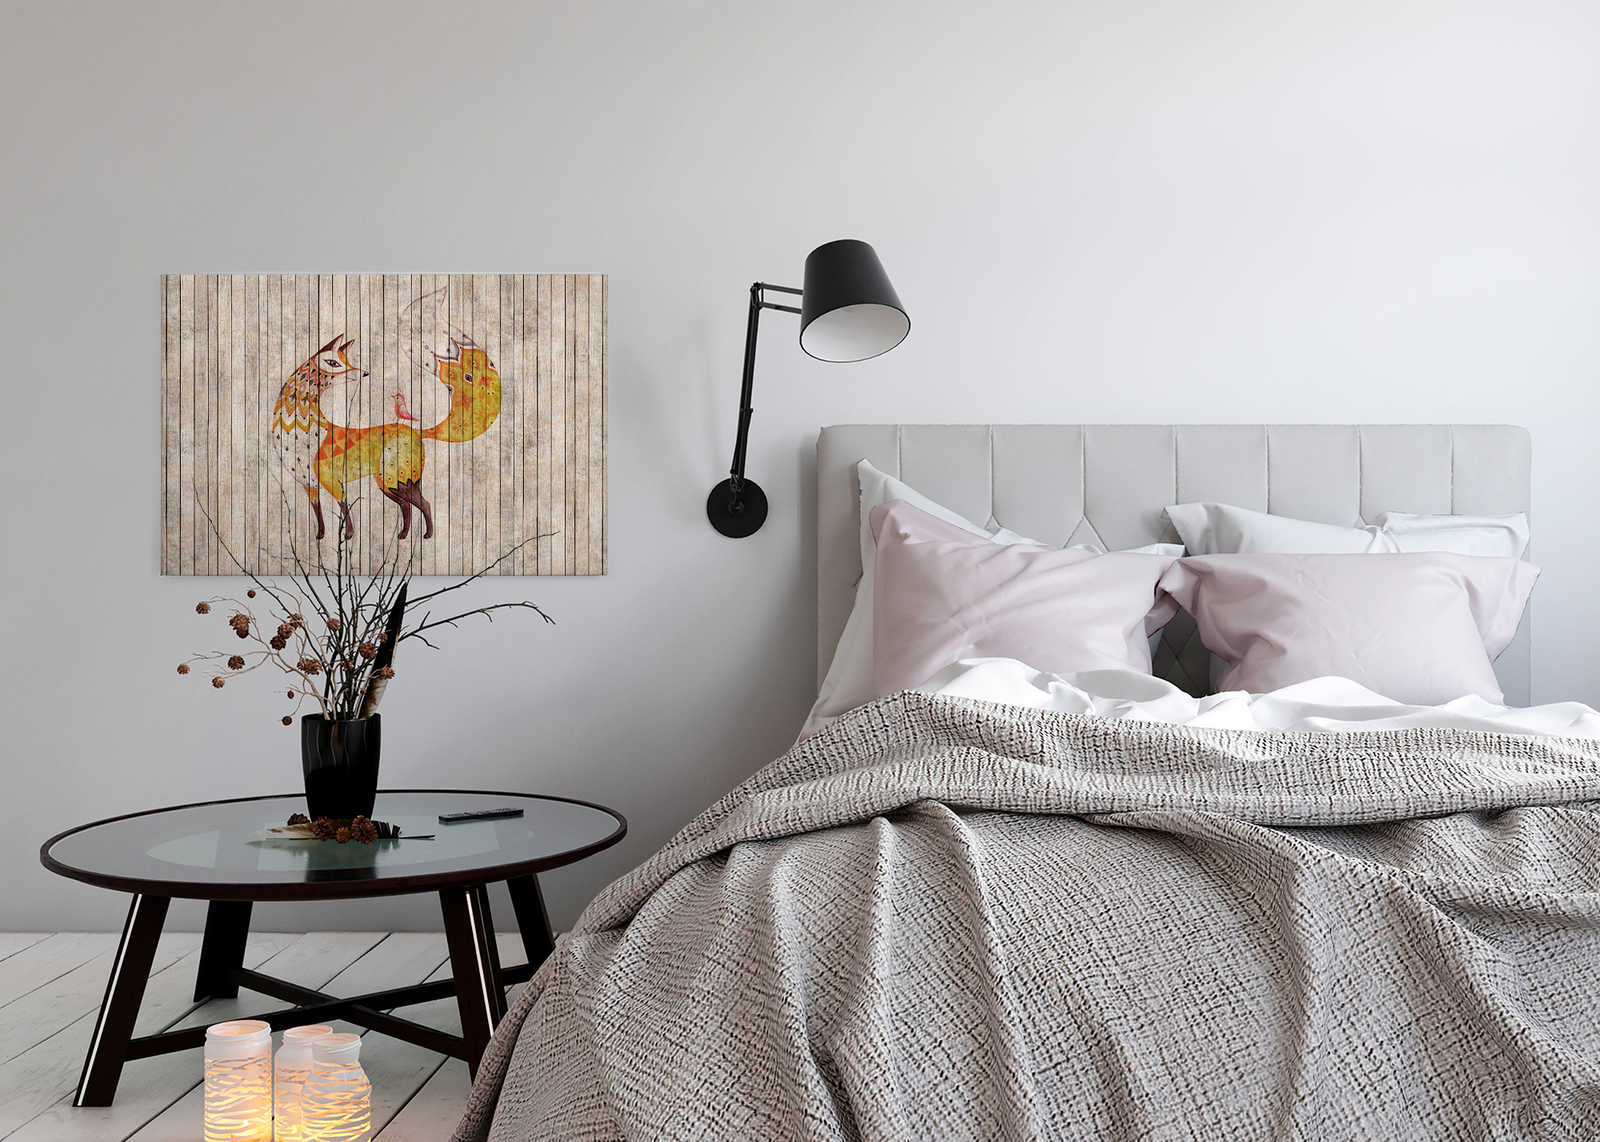             Cuento de hadas 2 - Zorro y pájaro sobre lienzo con aspecto de madera - 0,90 m x 0,60 m
        